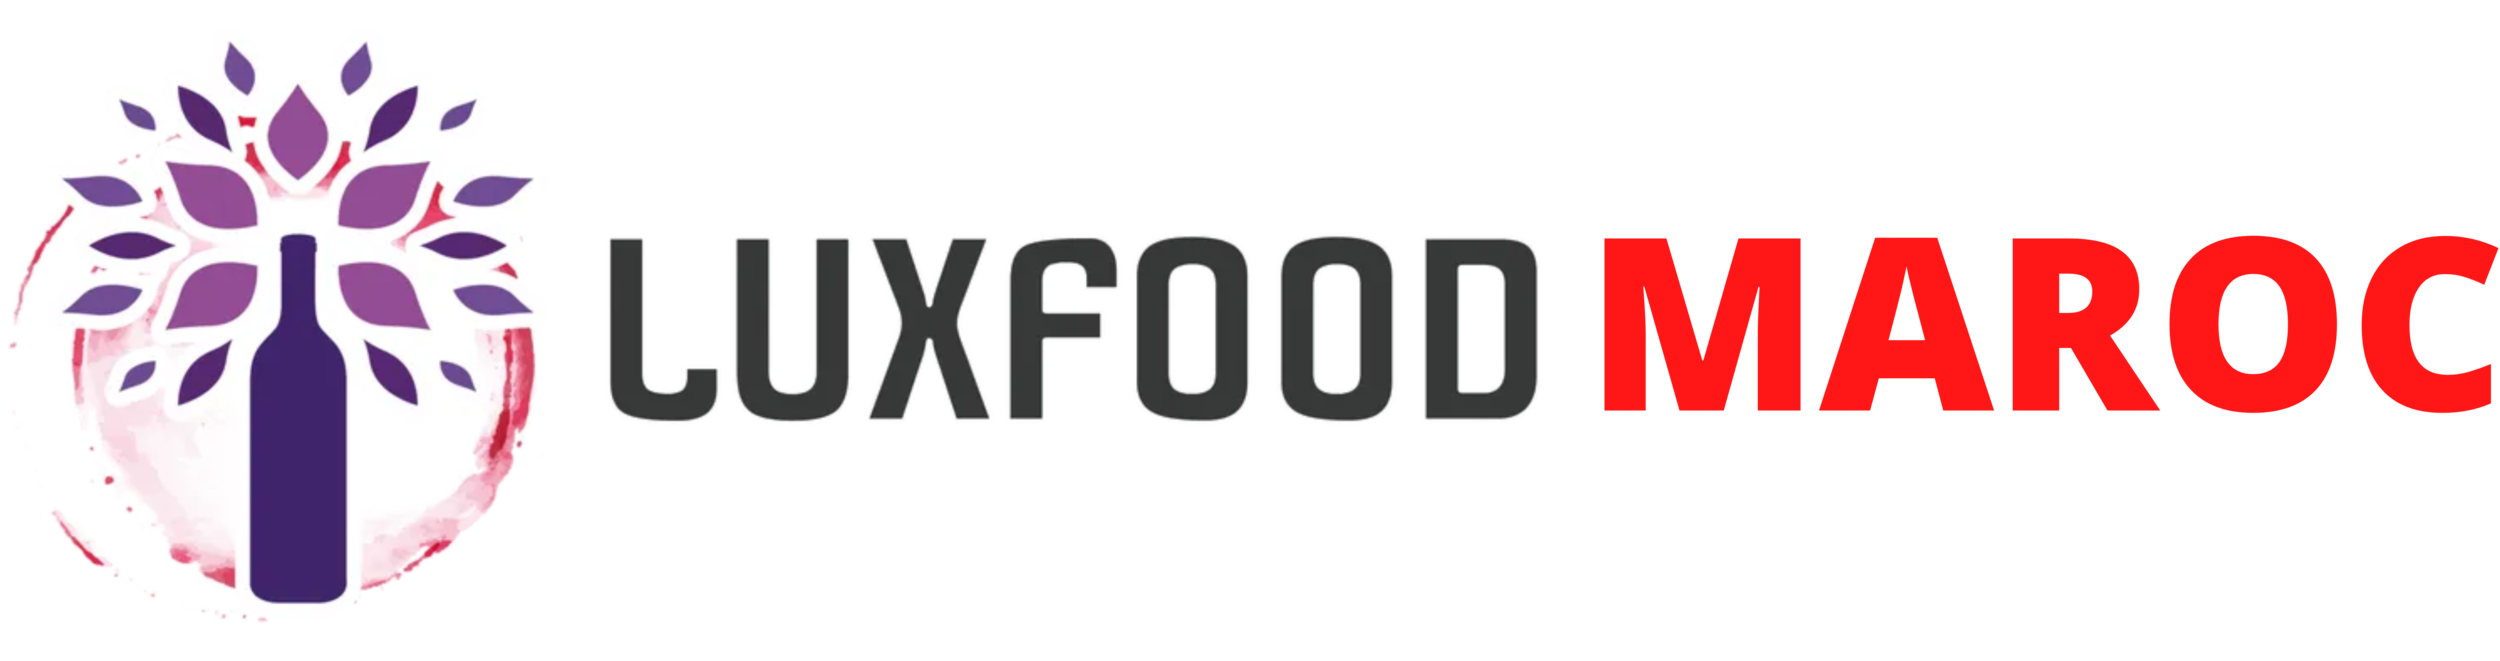 LuxFood-Maroc Distributeur de produits alimentaires Premium